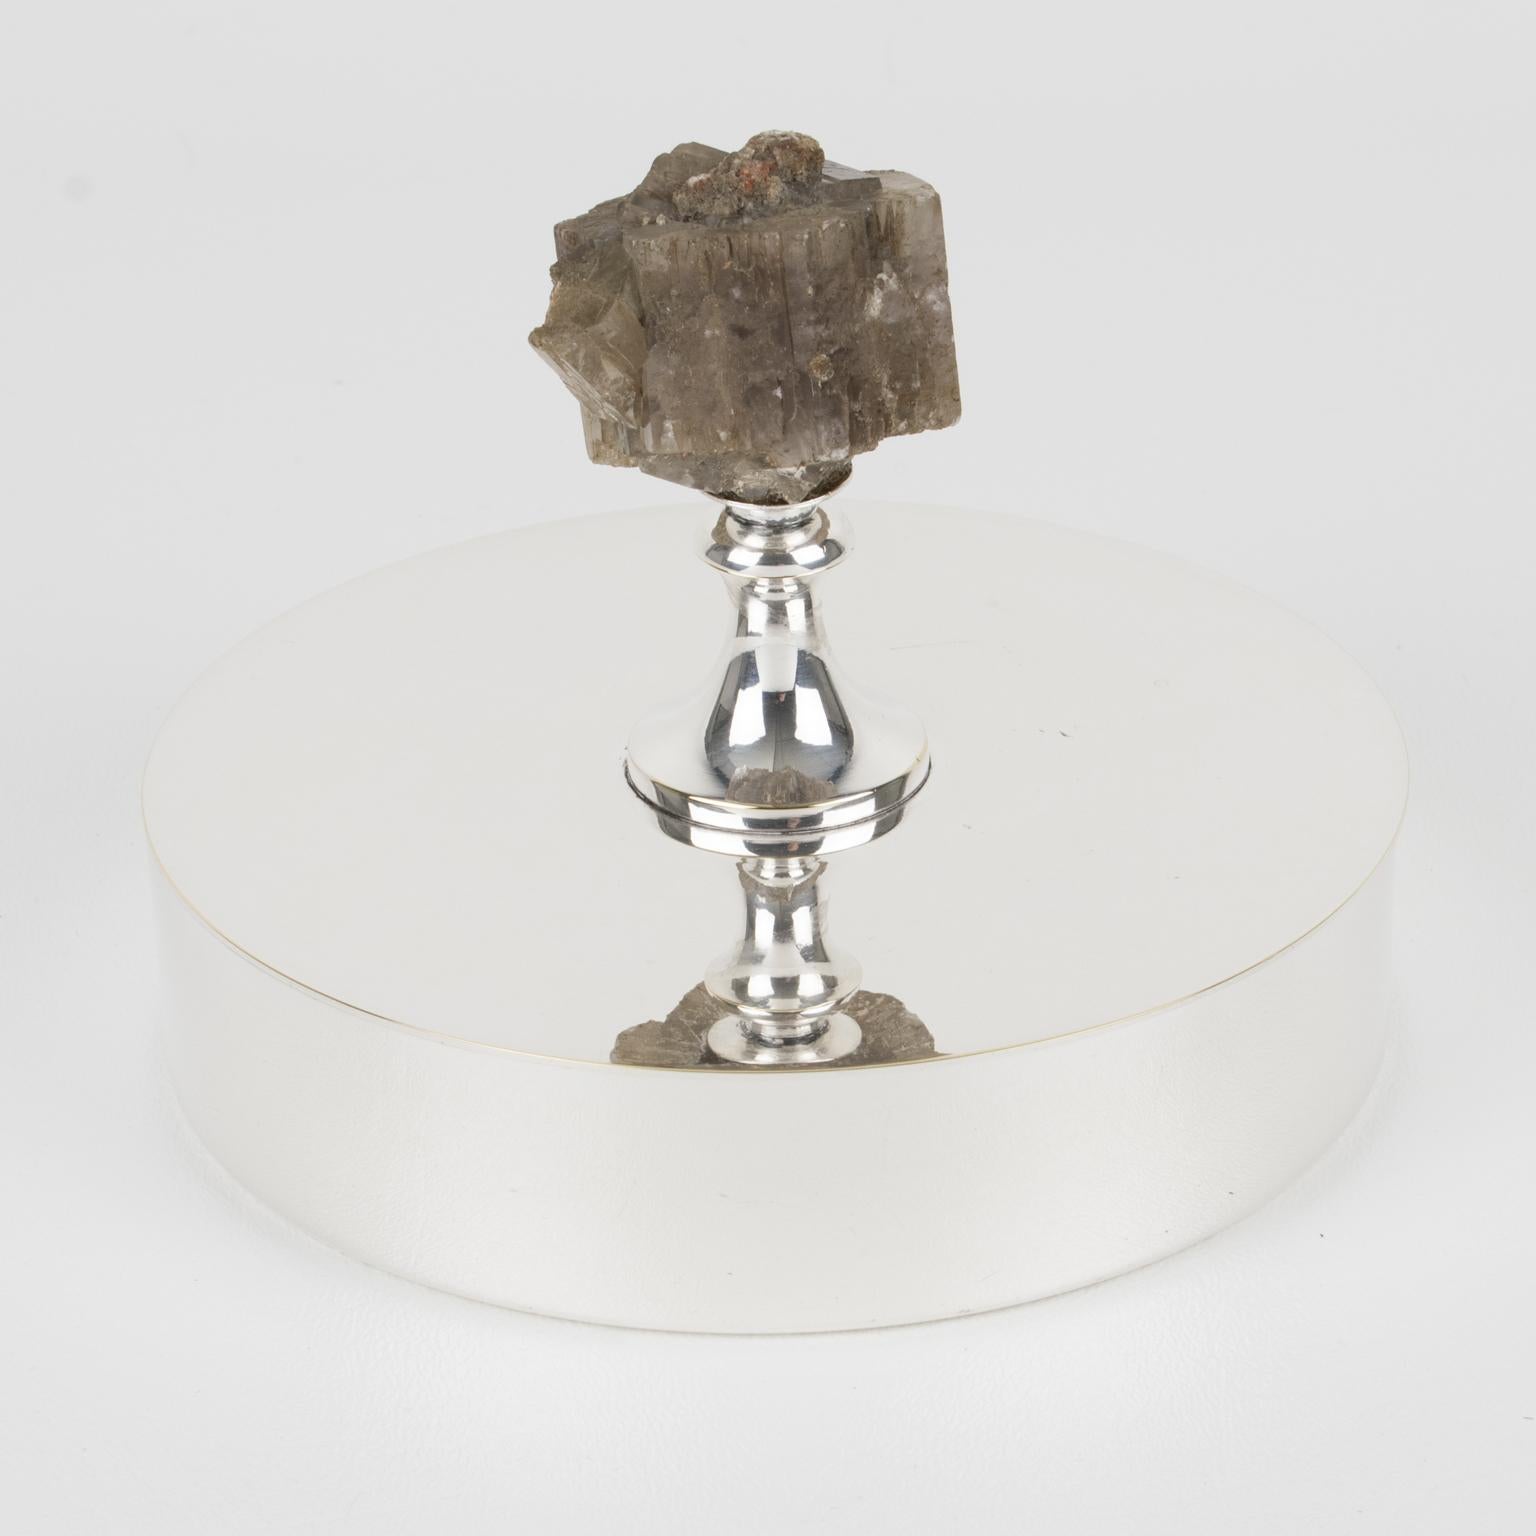 Cette magnifique boîte décorative moderniste en métal argenté a été réalisée pour la célèbre Maison Christian Dior pour sa Collectional. Il présente une élégante forme ronde minimaliste avec un couvercle orné d'une grande pierre de quartz en guise